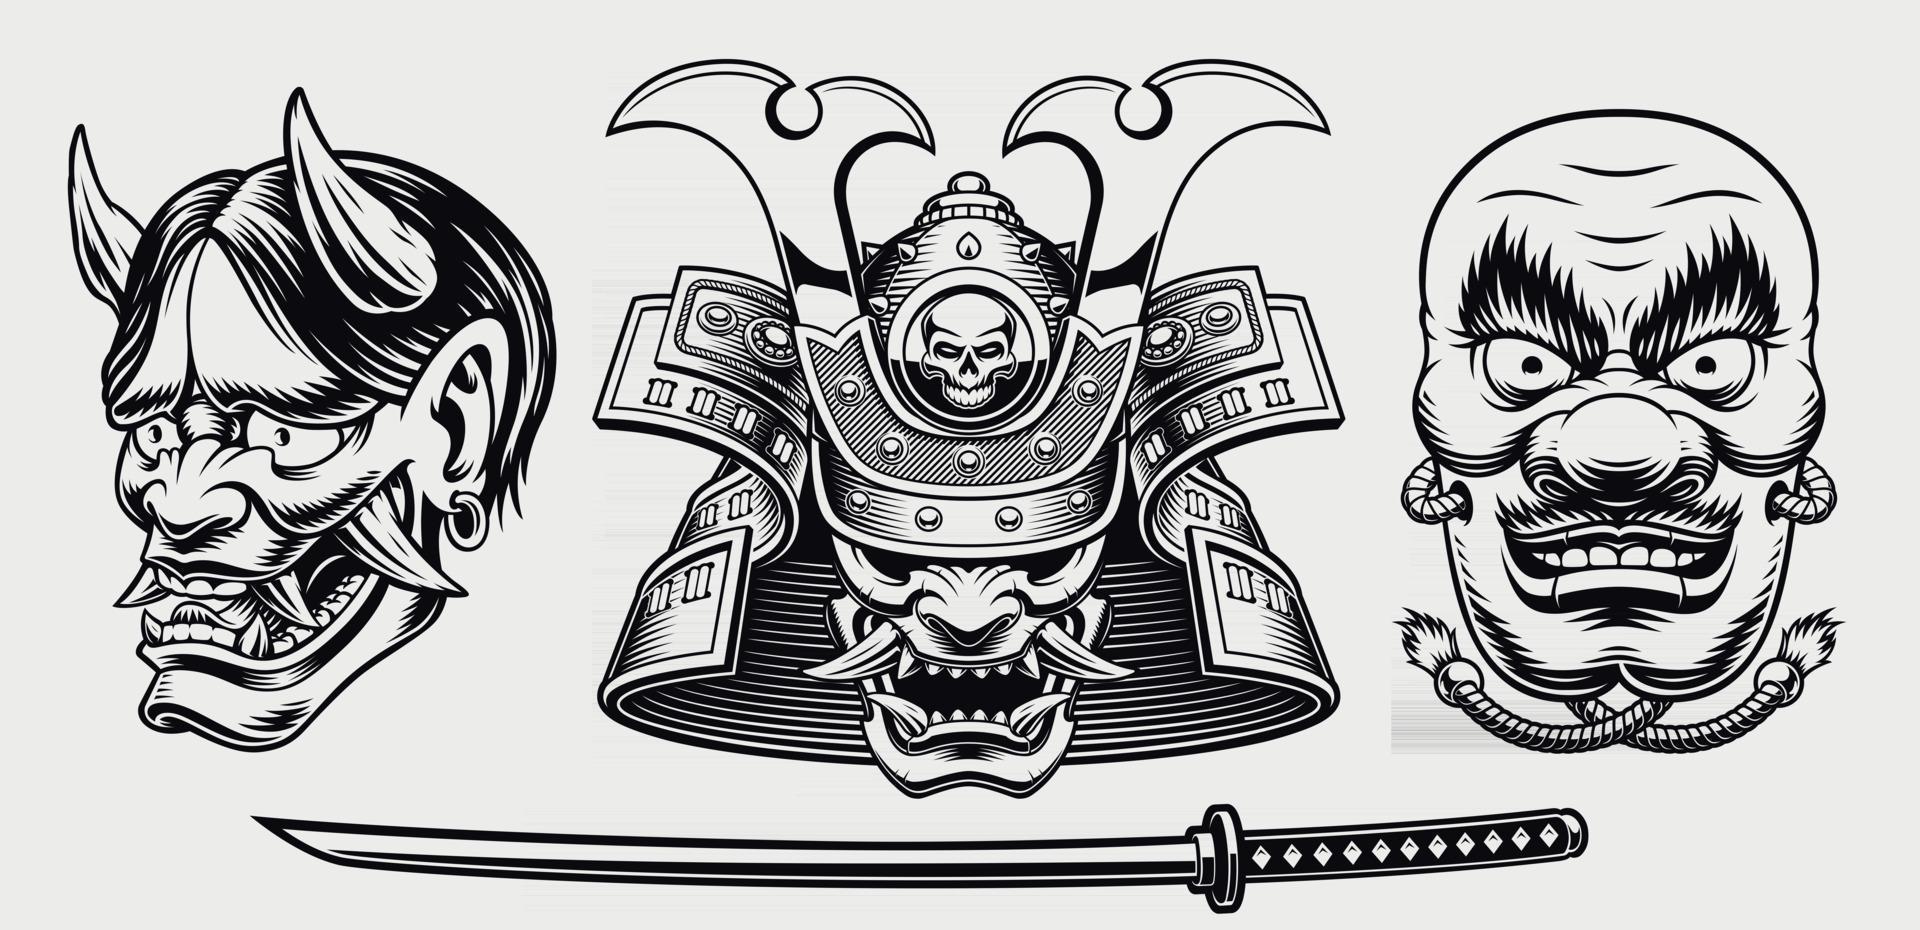 Black and white samurai-themed illustration vector